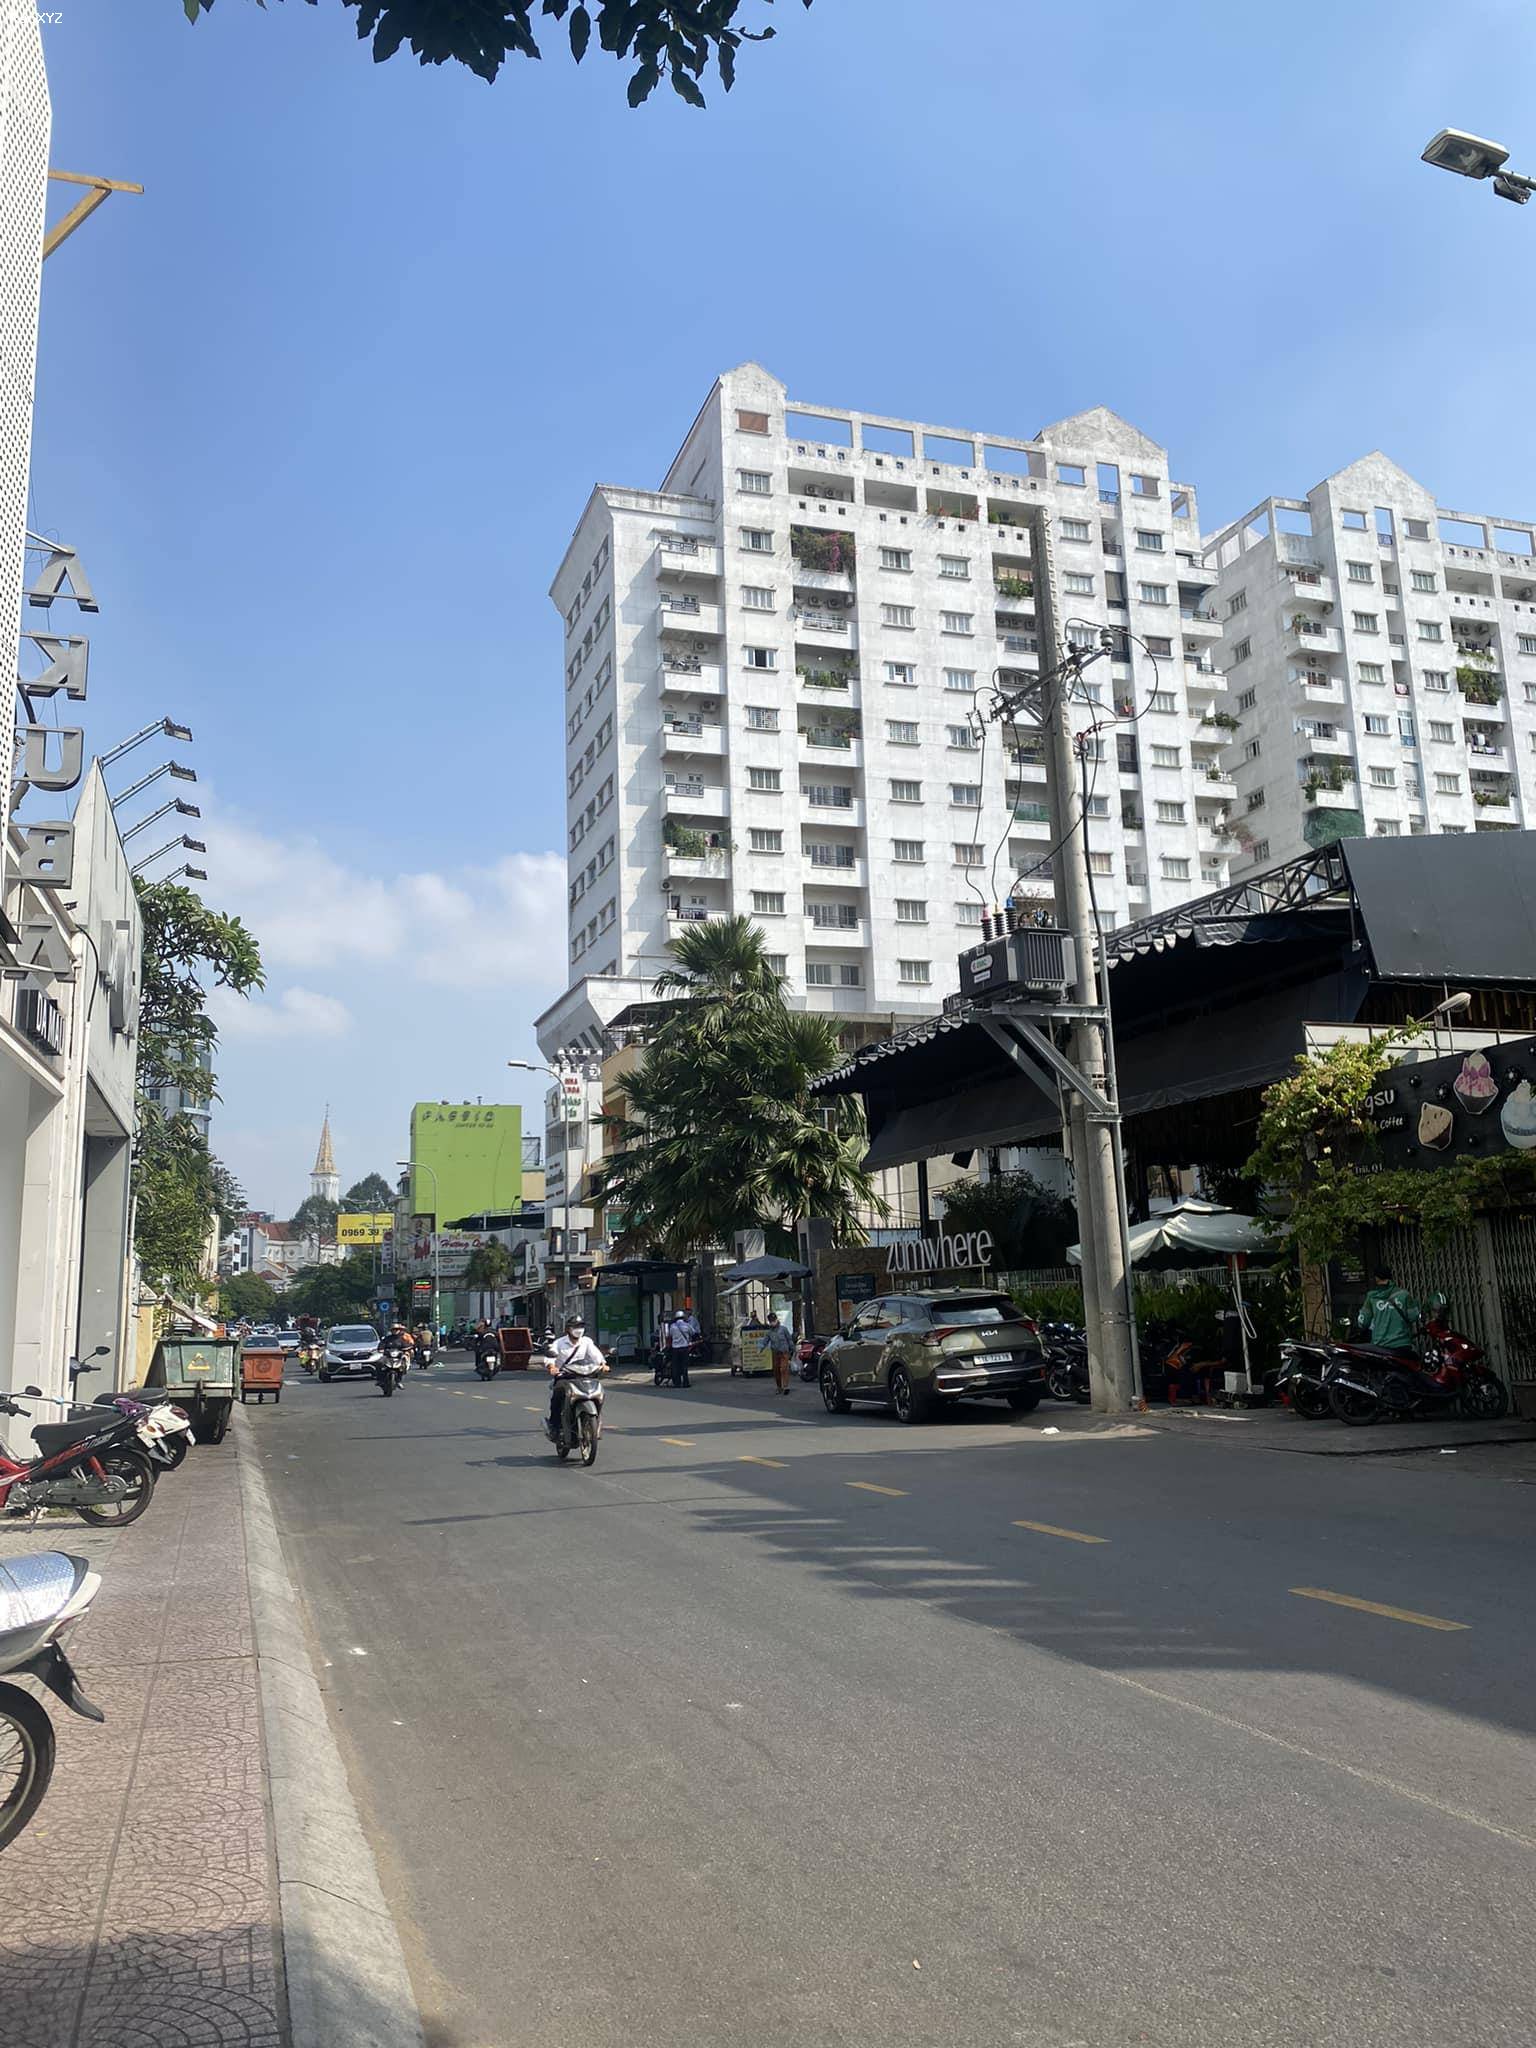 Bán nhà Nguyễn Trãi, Q1 – 6 tầng – 10PN – 5,2 x 16m – giá 12 tỉ